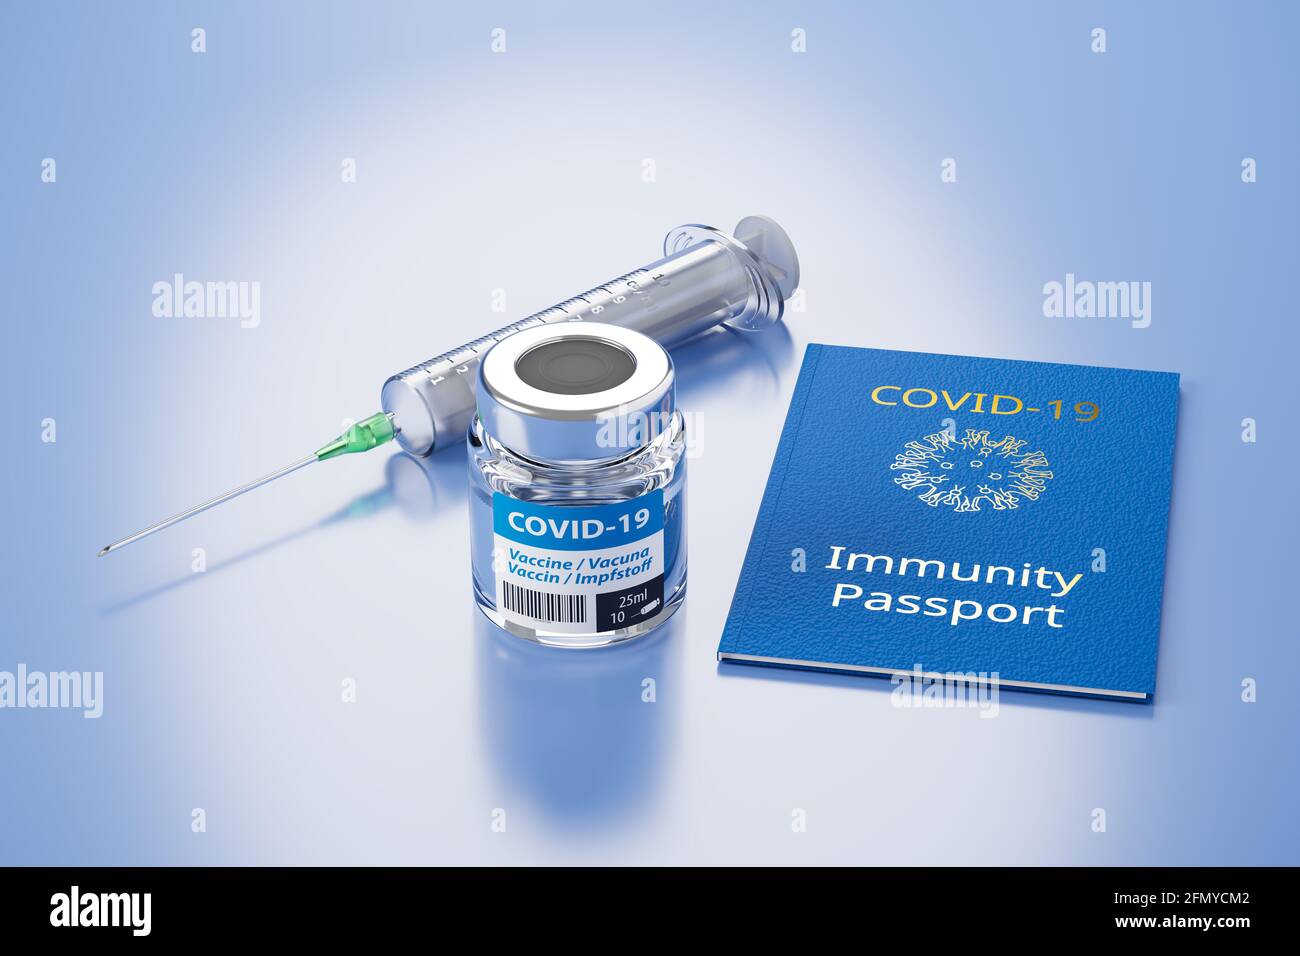 Concepto de pasaporte de inmunidad: Un vial de vacuna Covid-19, una jeringa y un pasaporte de inmunidad se embolsaron sobre una superficie azul. Foto de stock